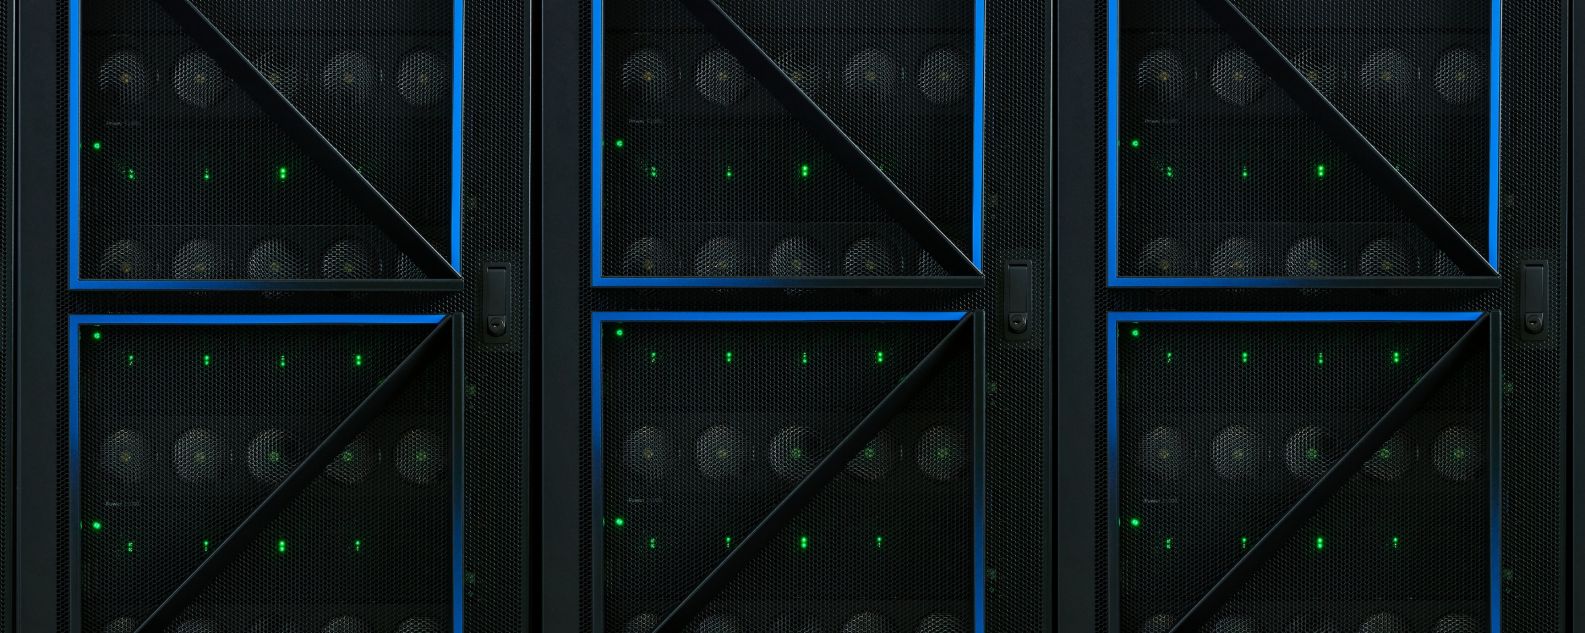 Um rack de servidores IBM Power